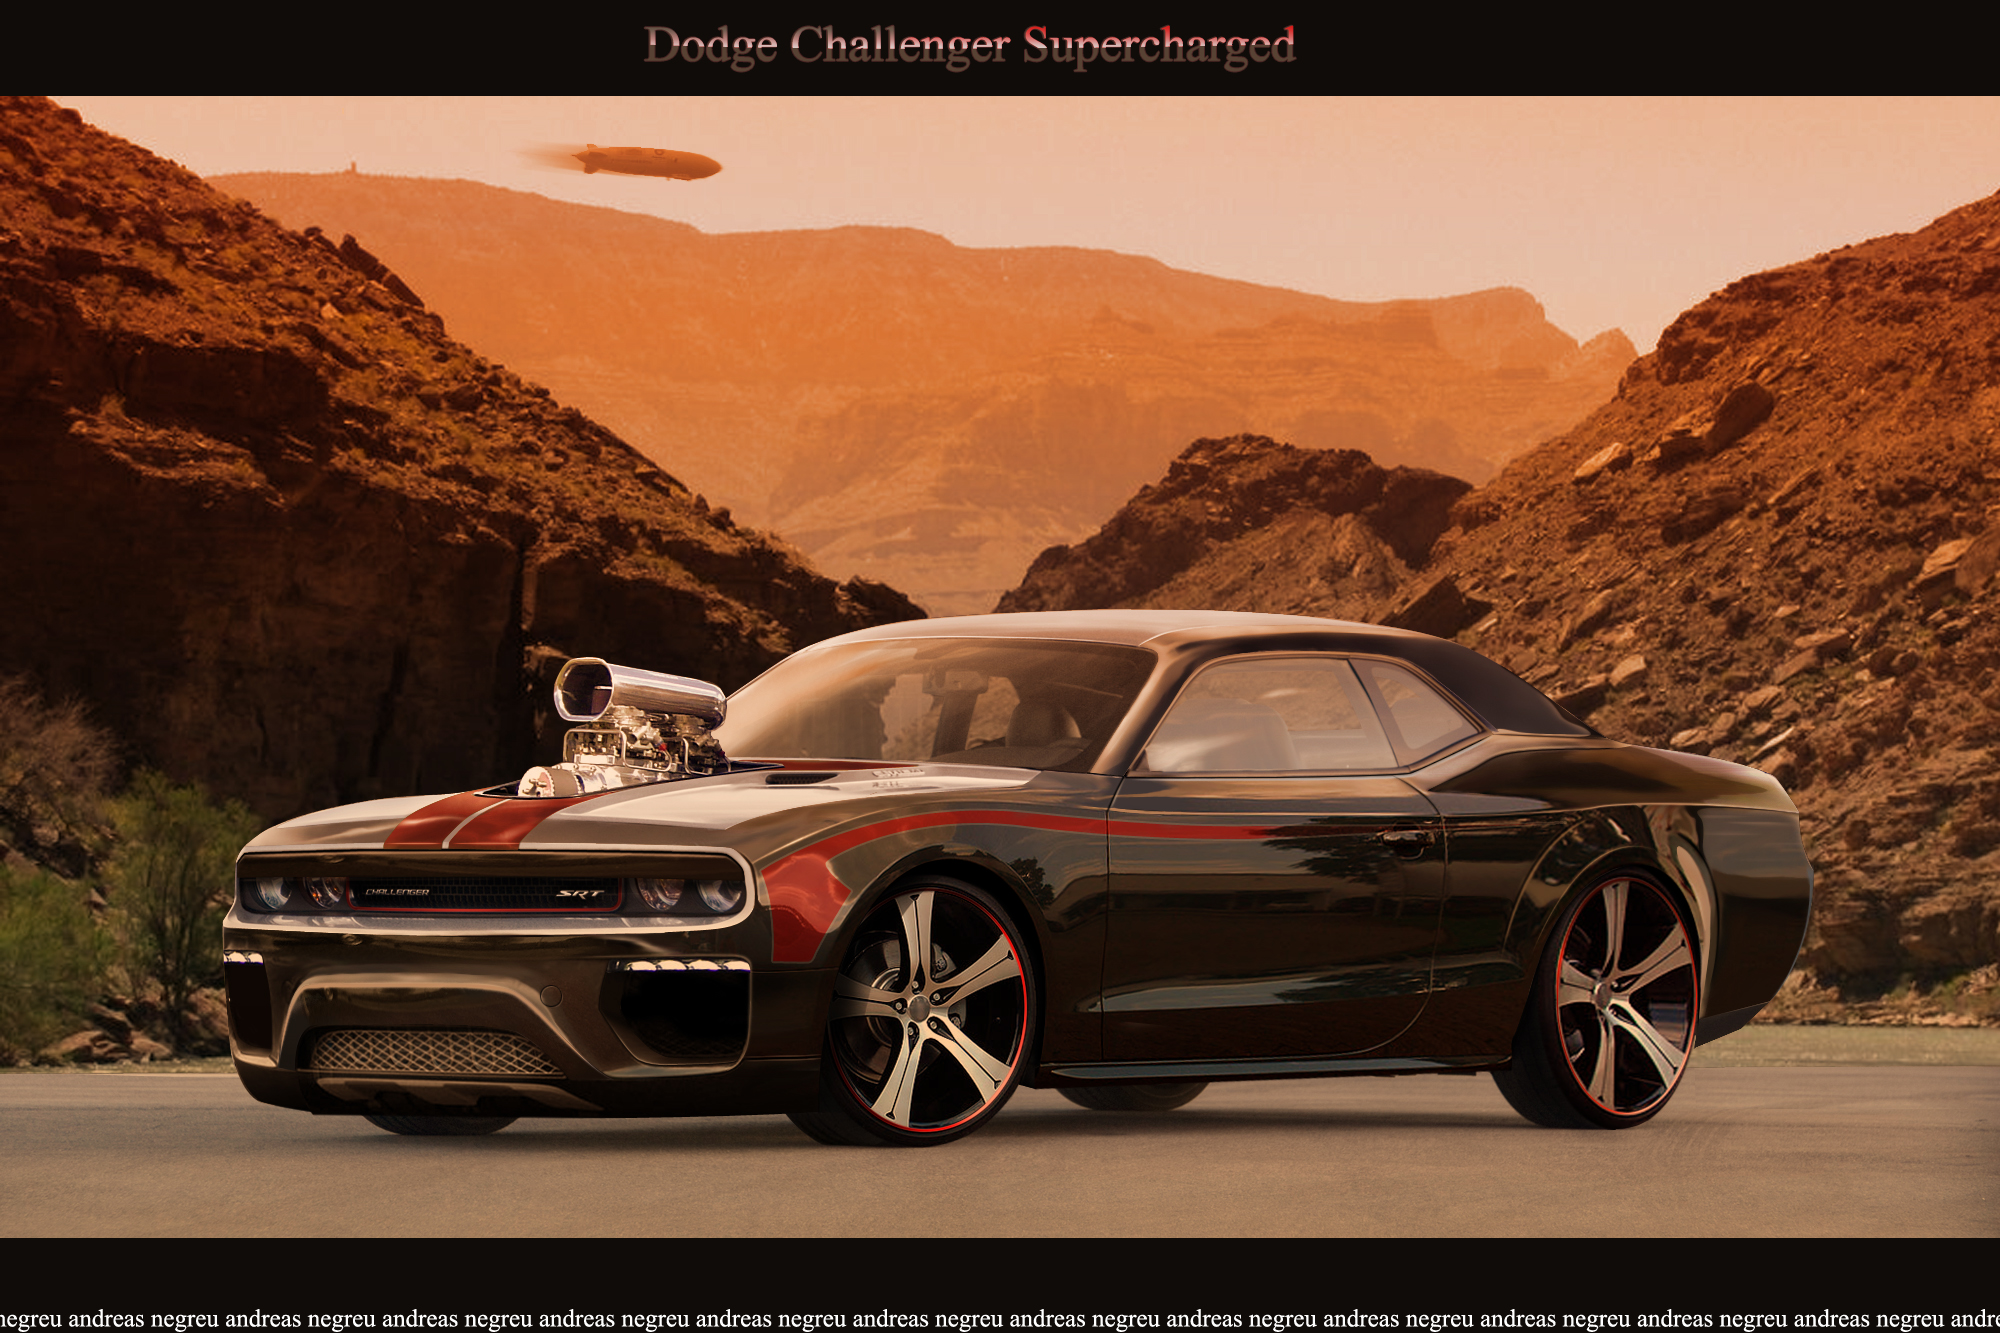 Free Desktop wallpaper downloads Dodge Charger Challenger car   Huge